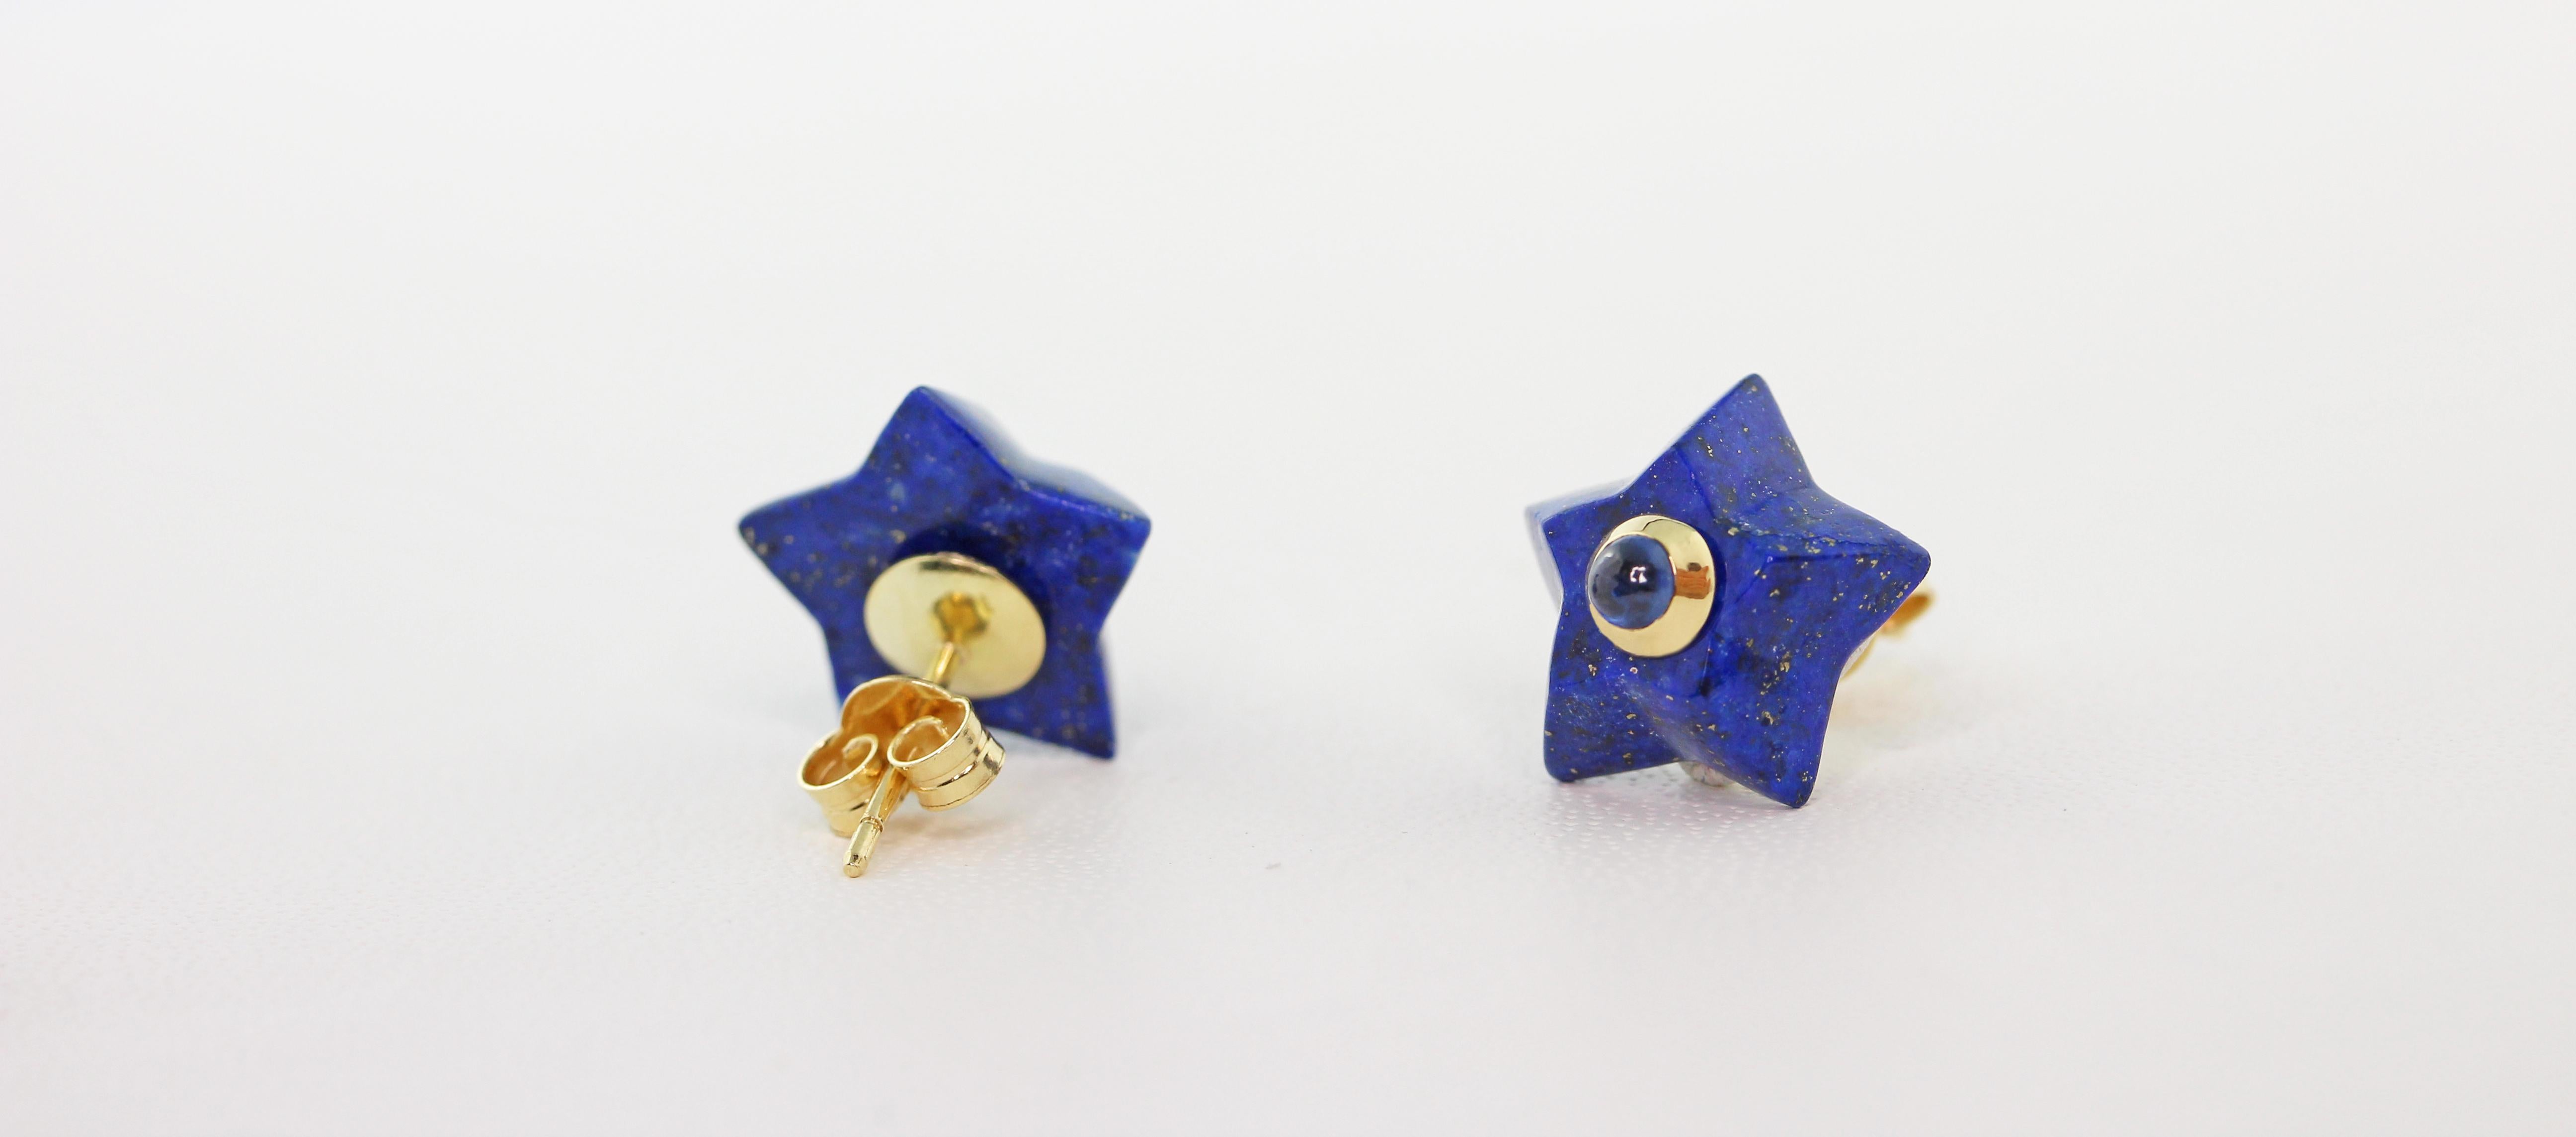 Cette charmante paire de boucles d'oreilles est entièrement sculptée à la main et réalisée en lapis-lazuli, en forme d'étoiles et ornée au centre de saphir cabochon. 
La monture est en or jaune 18 carats. 

Dimensions :
                    1.4 x 1,4